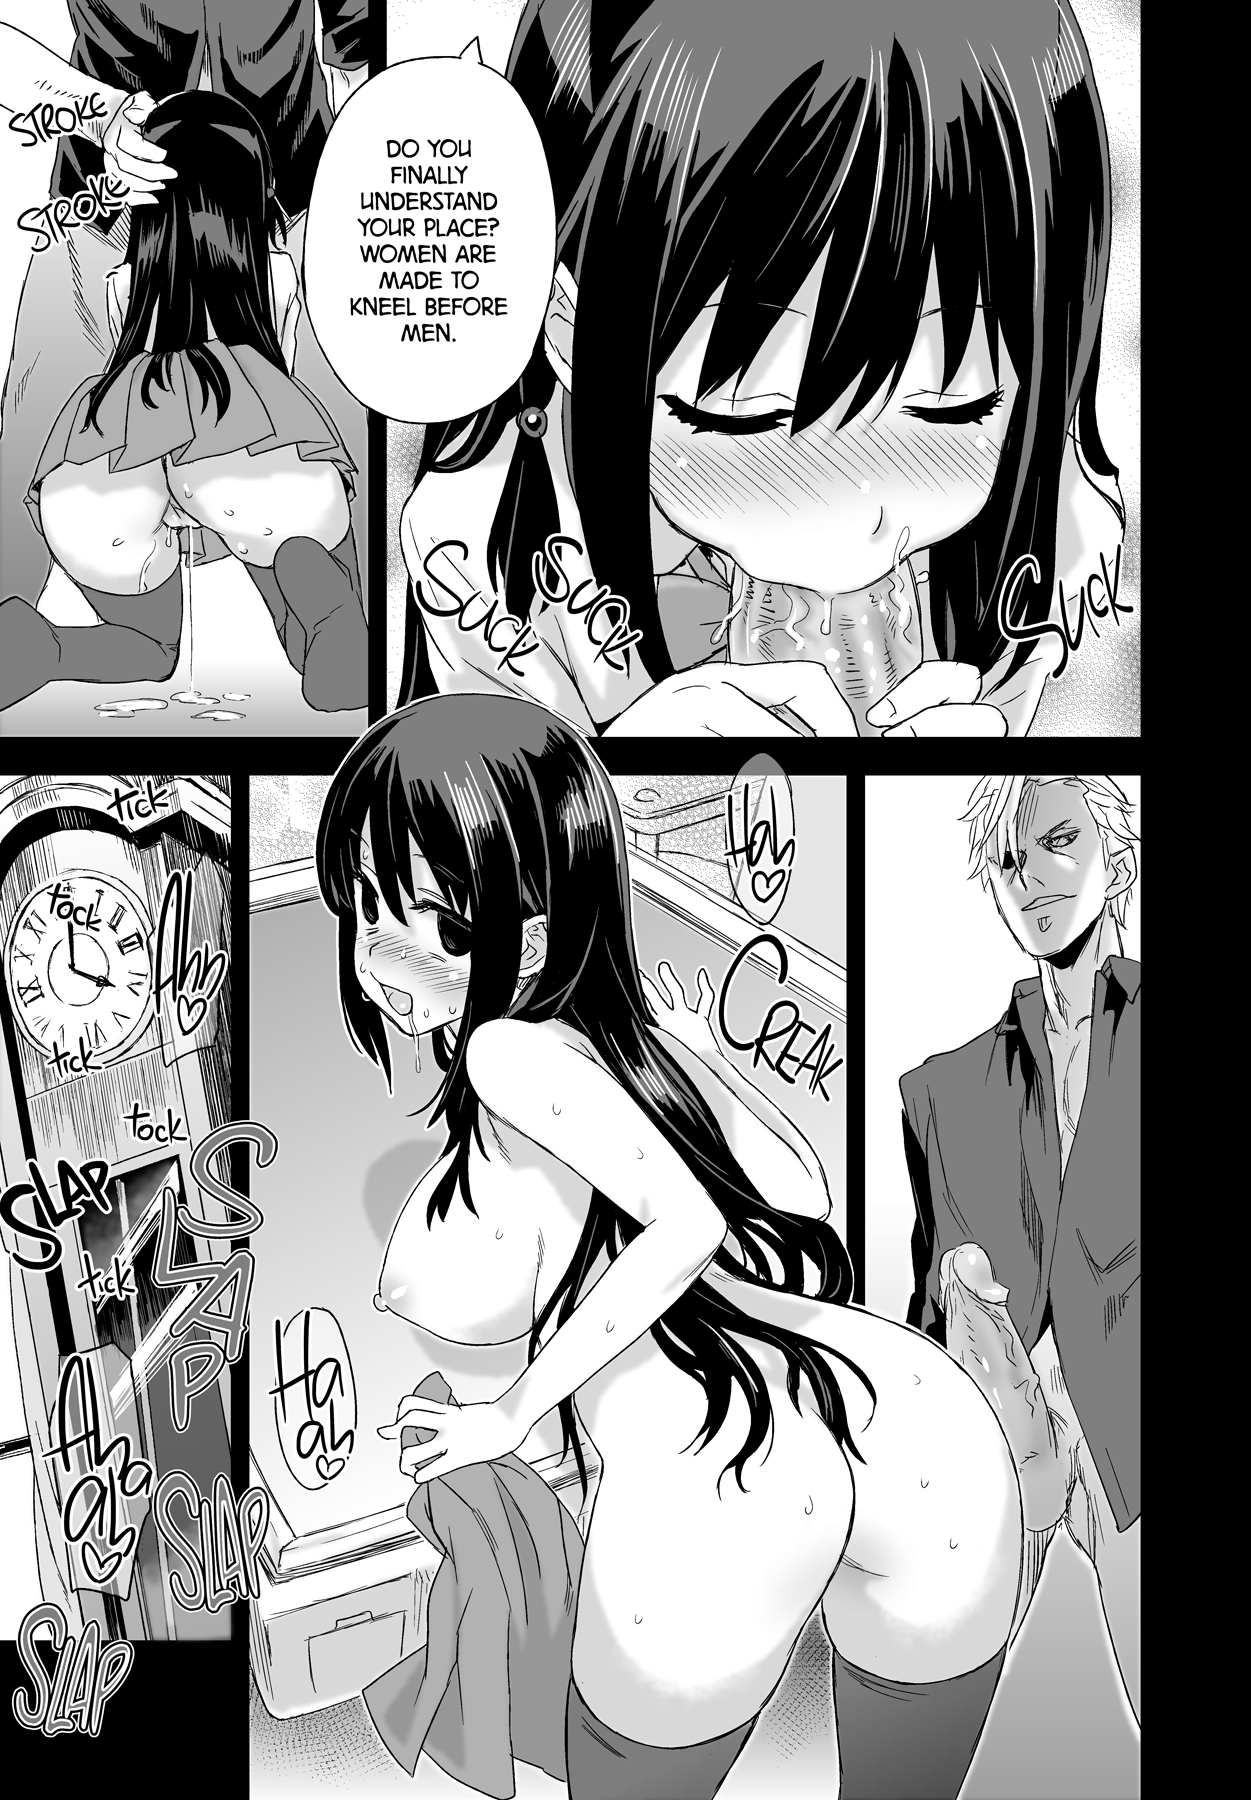 Victim Girls 13 - DRAGON SLAYER hentai manga picture 29